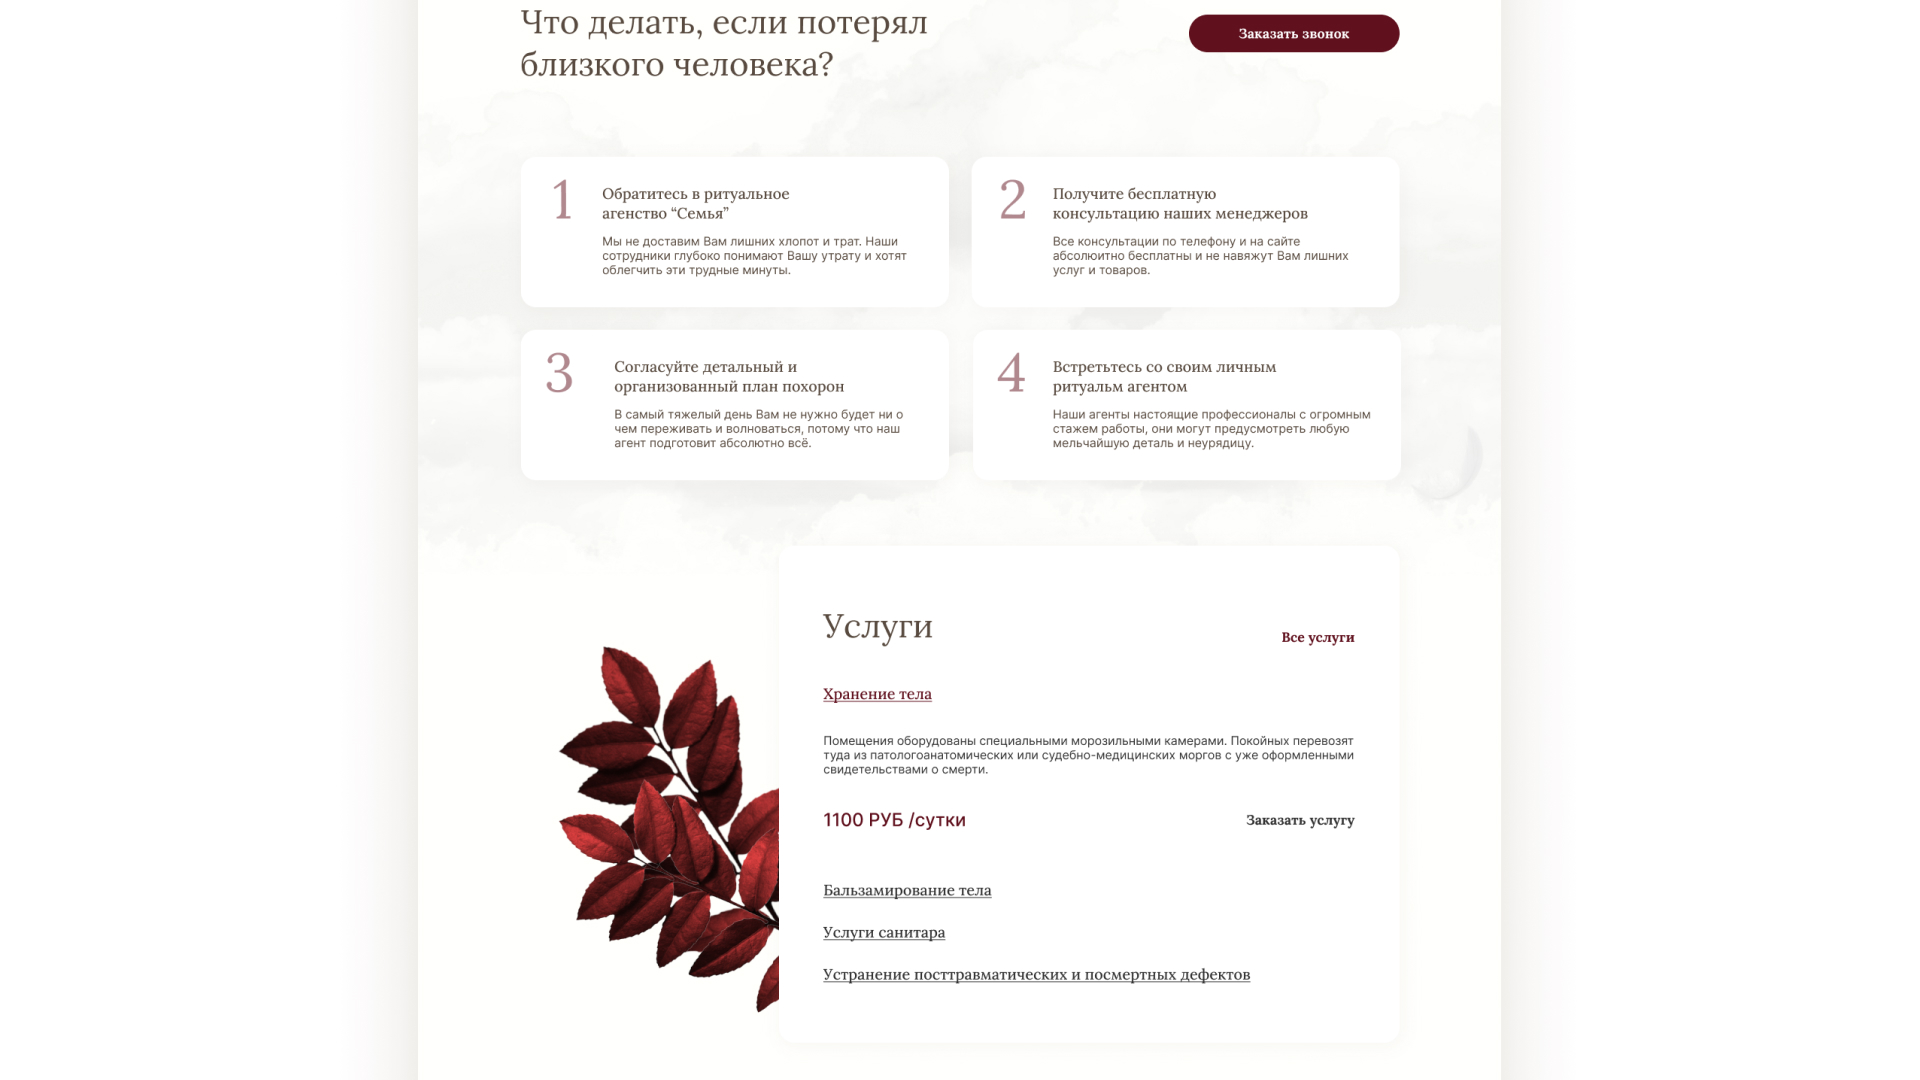 Разработка логотипа и сайта в Ярцево ритуальных услуг «Семья»